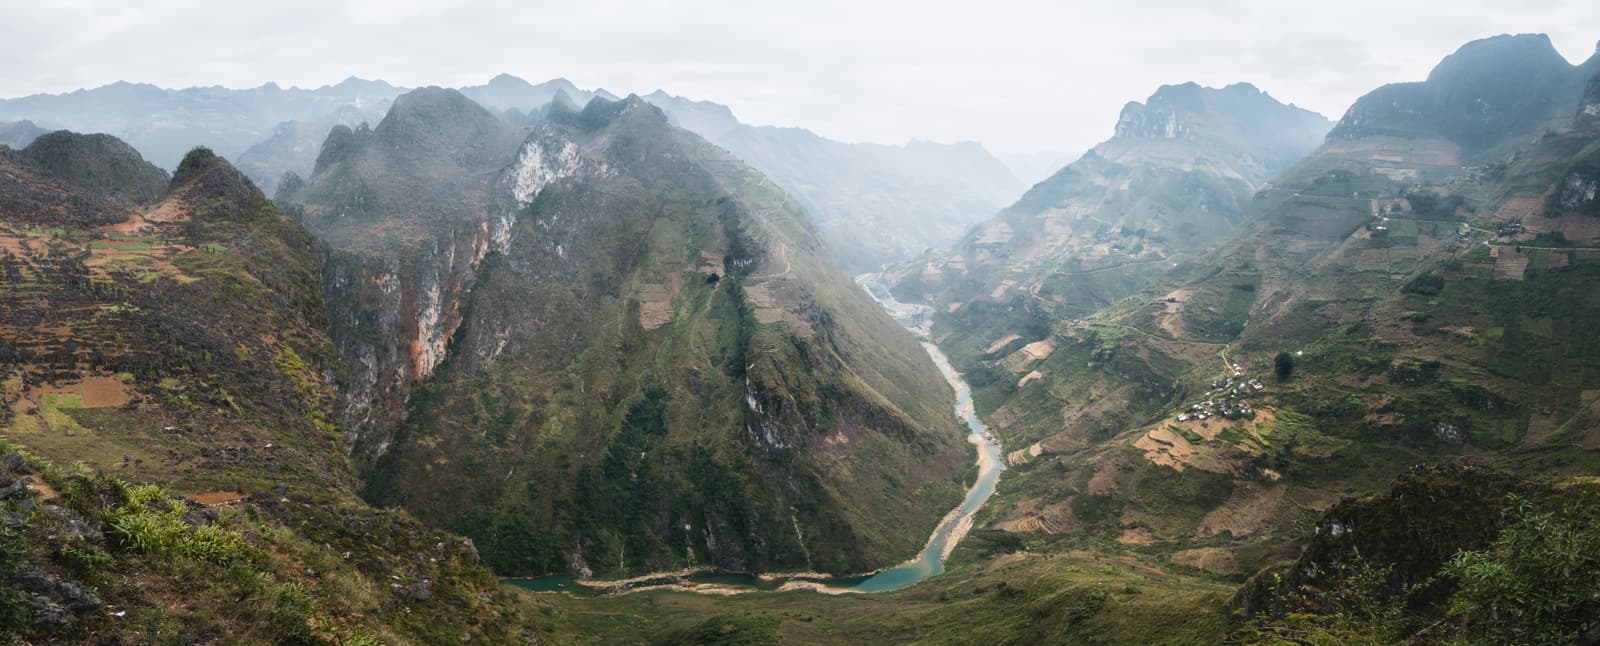 Mã Pí Lèng Pass, Hà Giang Province, Vietnam